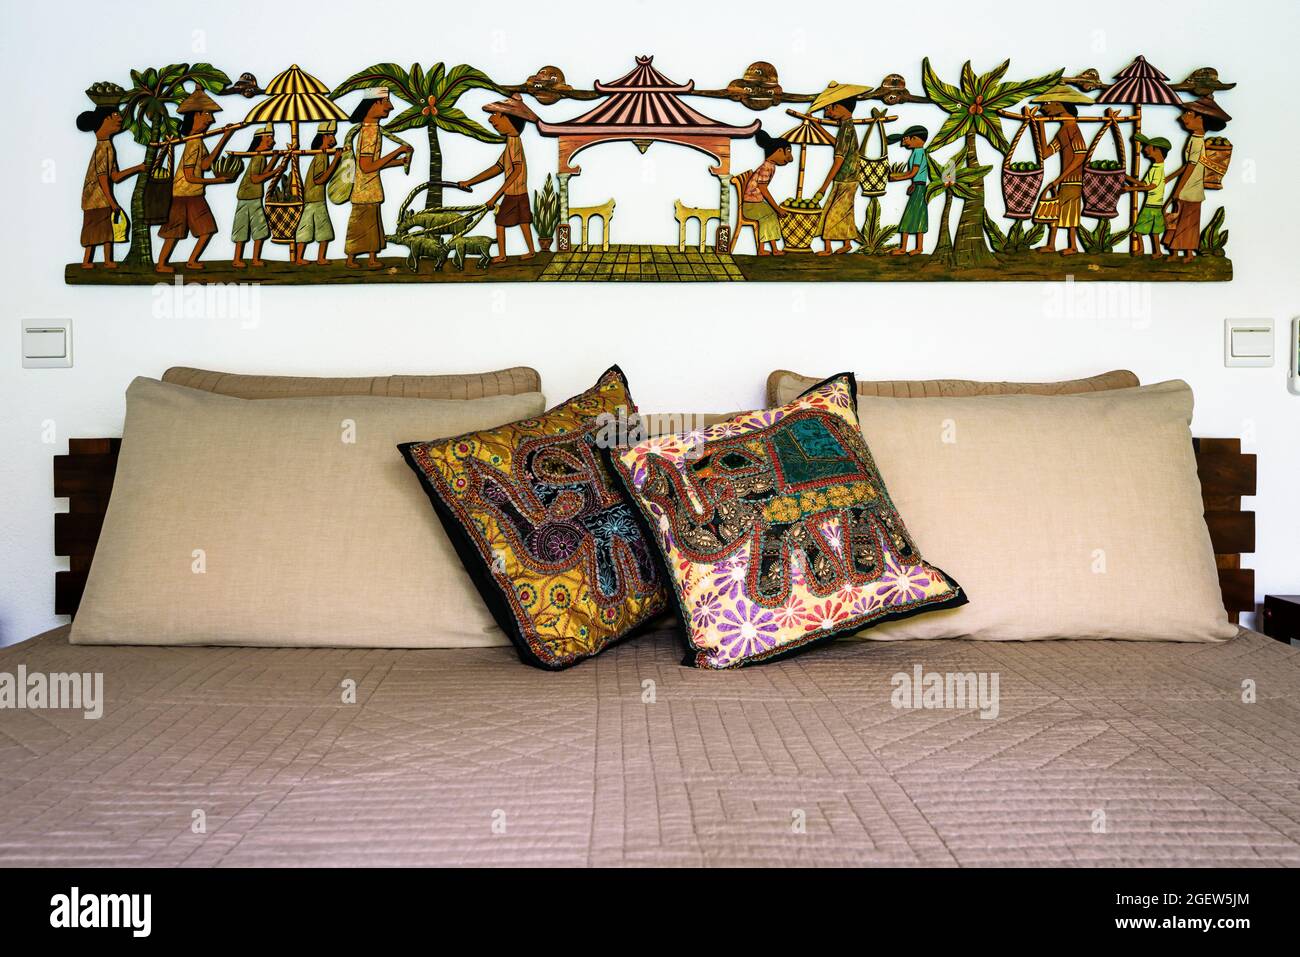 Tangalle, Sri Lanka - 31. Oktober 2017: Im Hotel oder Wohnhaus, Bett mit Kissen und Kissen im ethnischen Stil. Schlafzimmer Haus Interieur in Indian Stockfoto